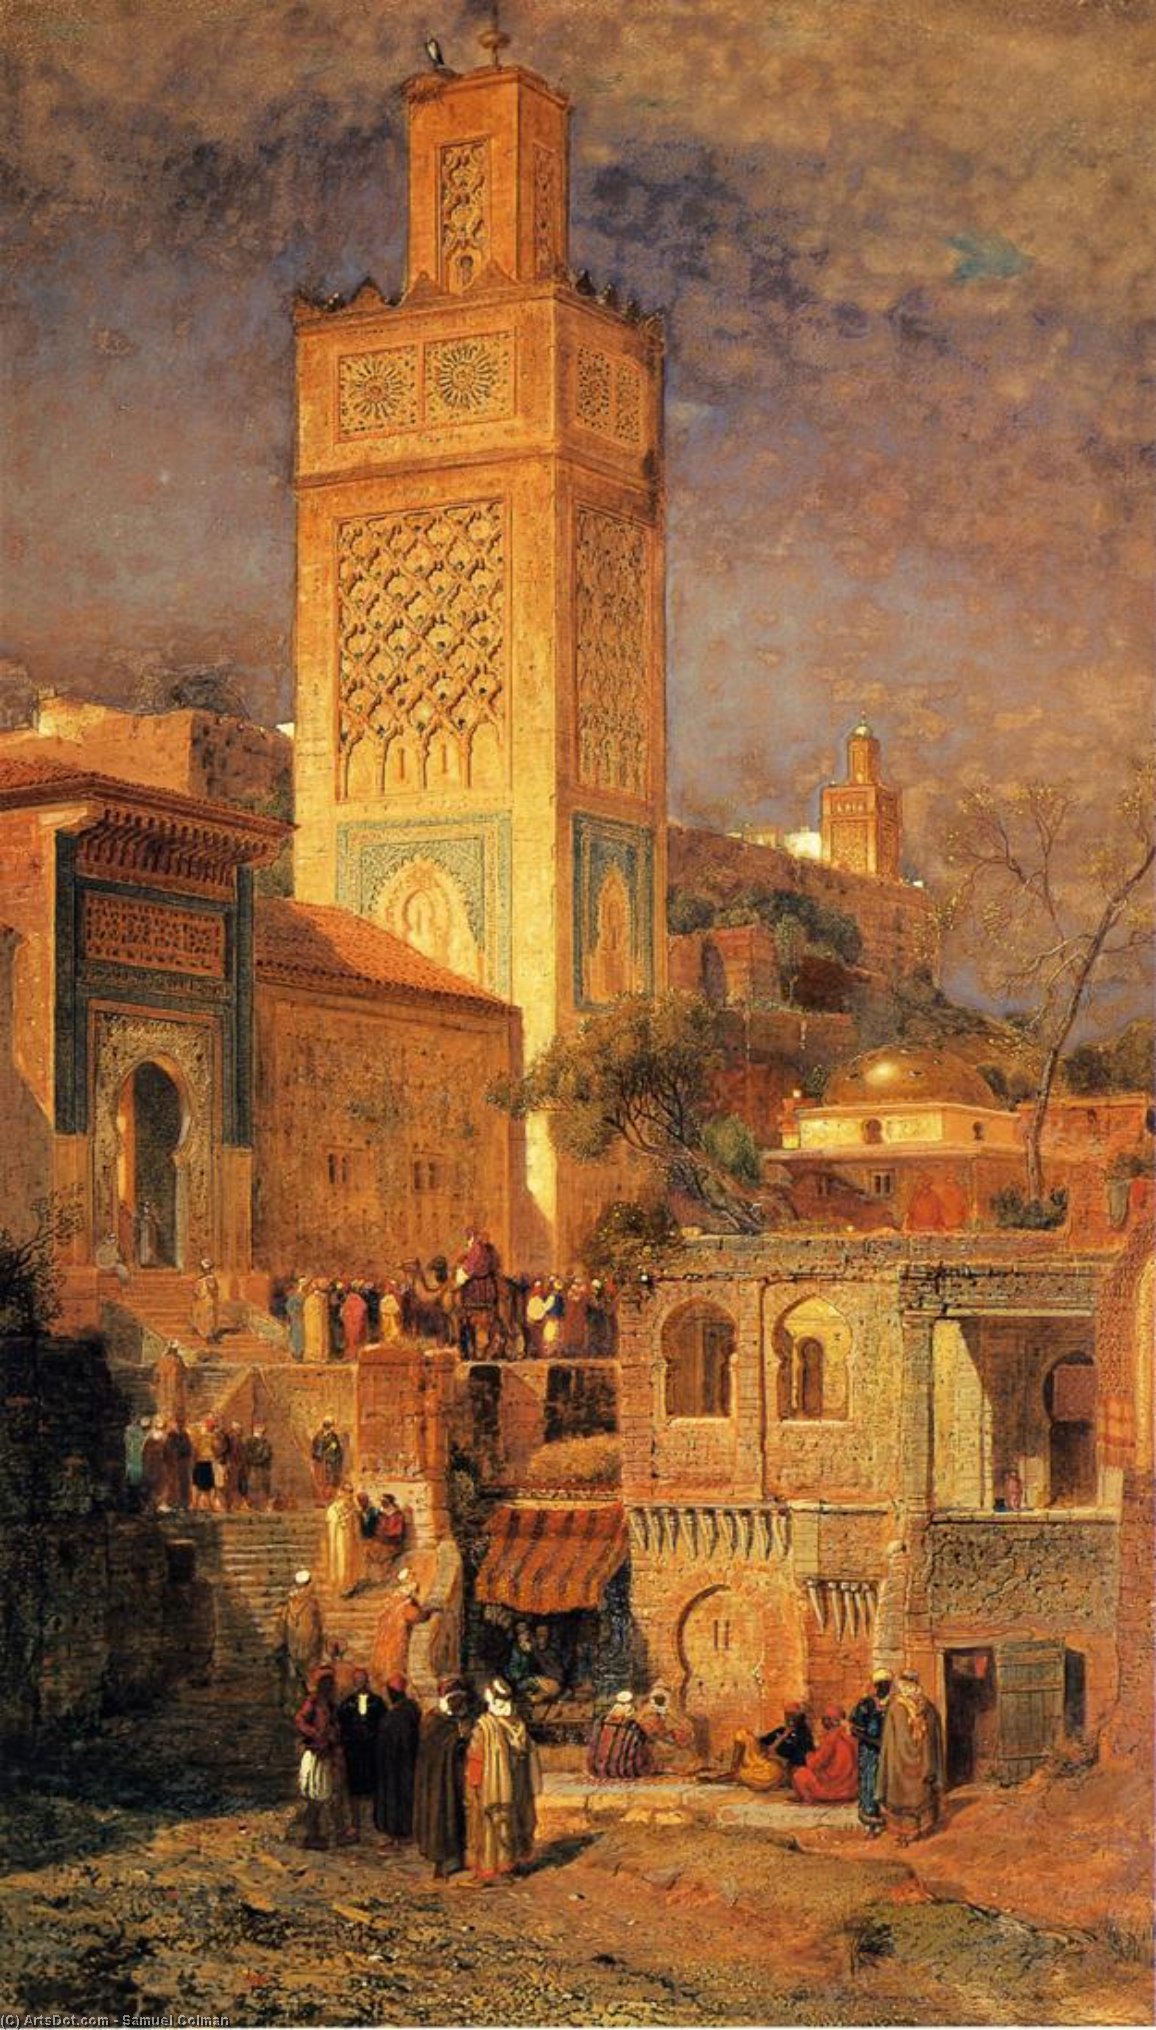 Order Art Reproductions Moorish Mosque of Sidi Halou Tlemcin [Tlemcen], Algeria, 1875 by Samuel Colman (1832-1920, United Kingdom) | ArtsDot.com